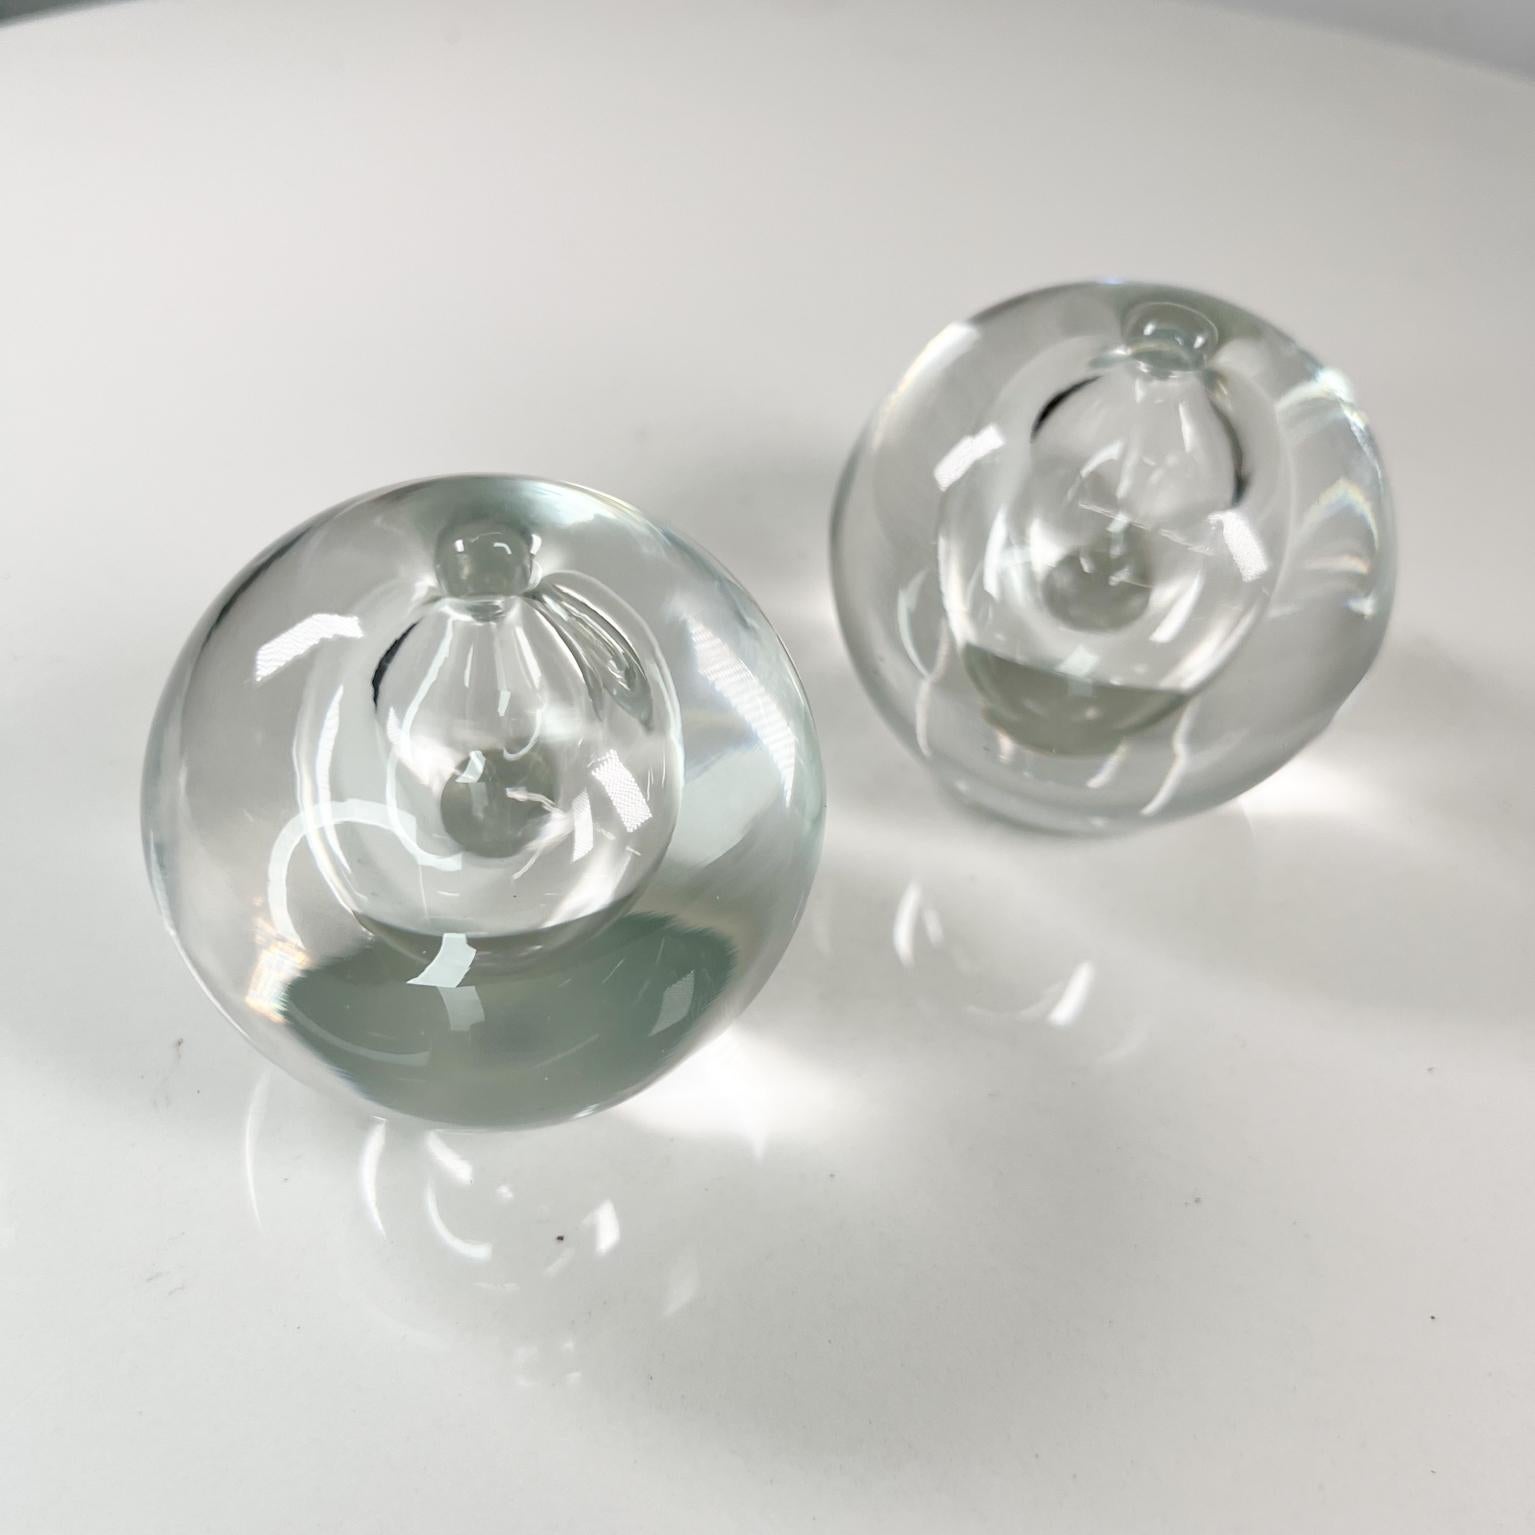 Mid-Century Modern 1960s Modern Orb Globe Art Glass Vase Pair Style of Rosenthal Studio Line